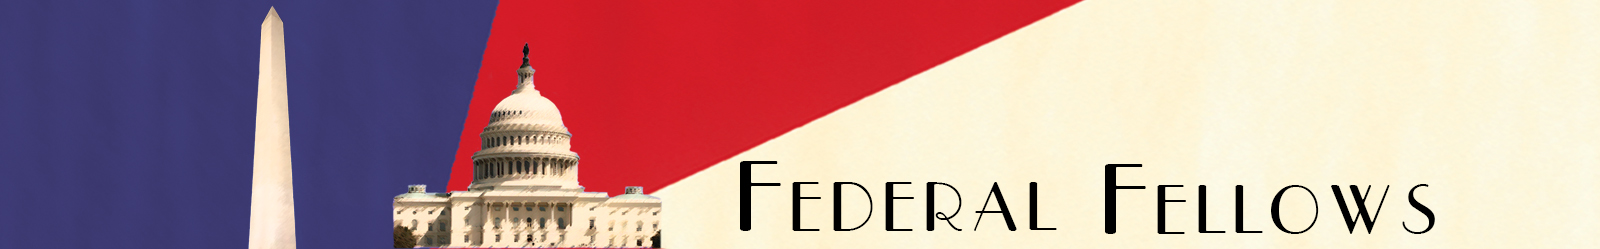  Federal Fellows logo